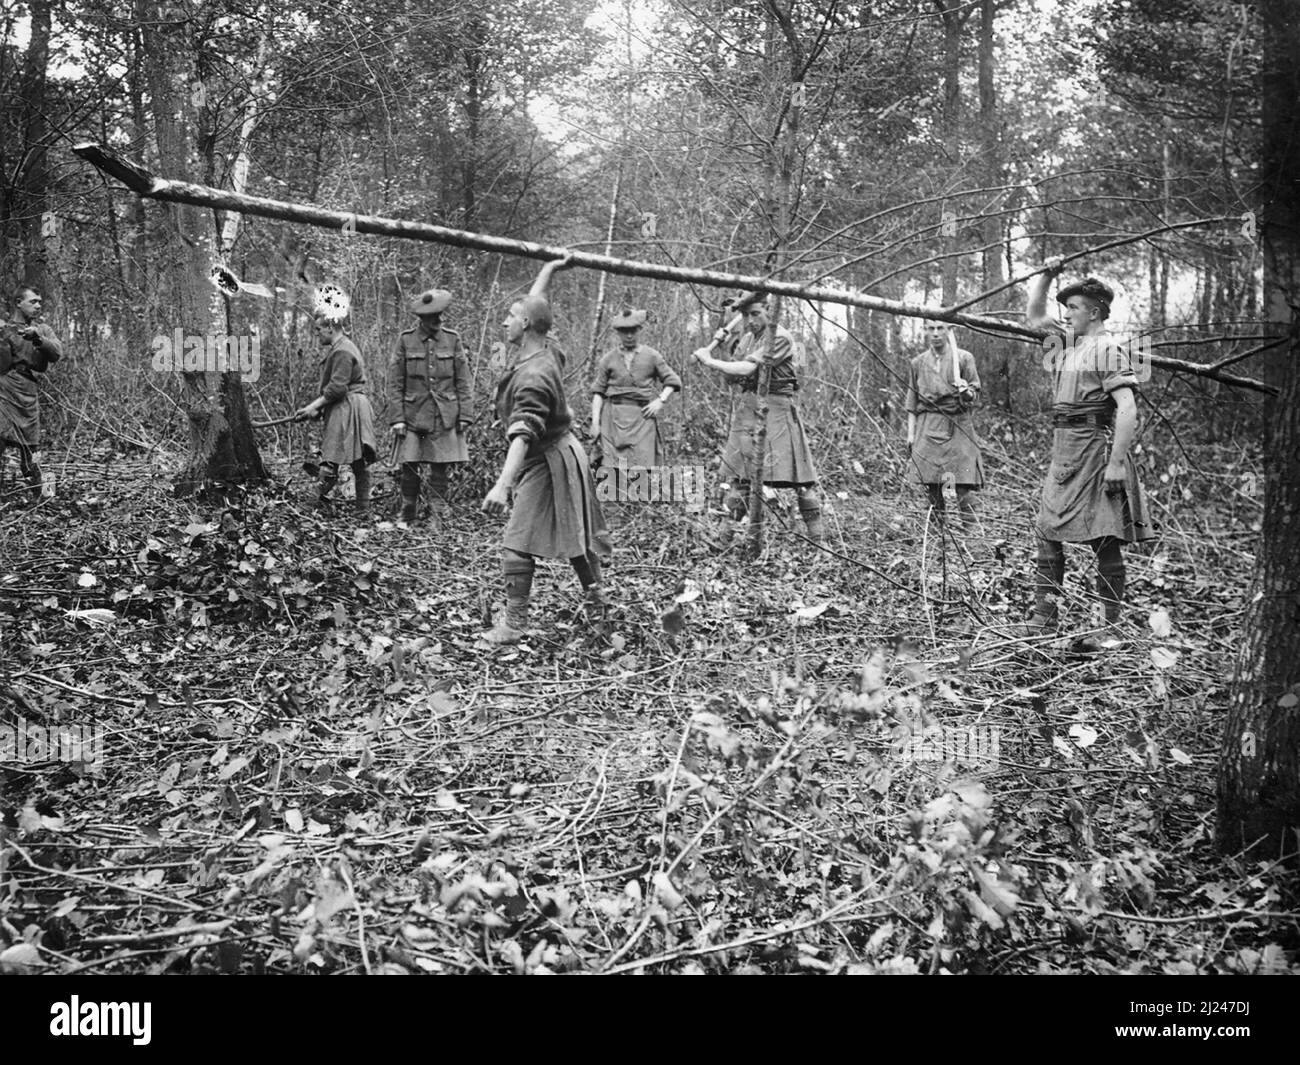 Truppe scozzesi, probabilmente Gordon Highlanders, tagliando alberi in un bosco a Querrieu per la realizzazione di strade, sul fronte Somme, settembre 1916. Foto Stock